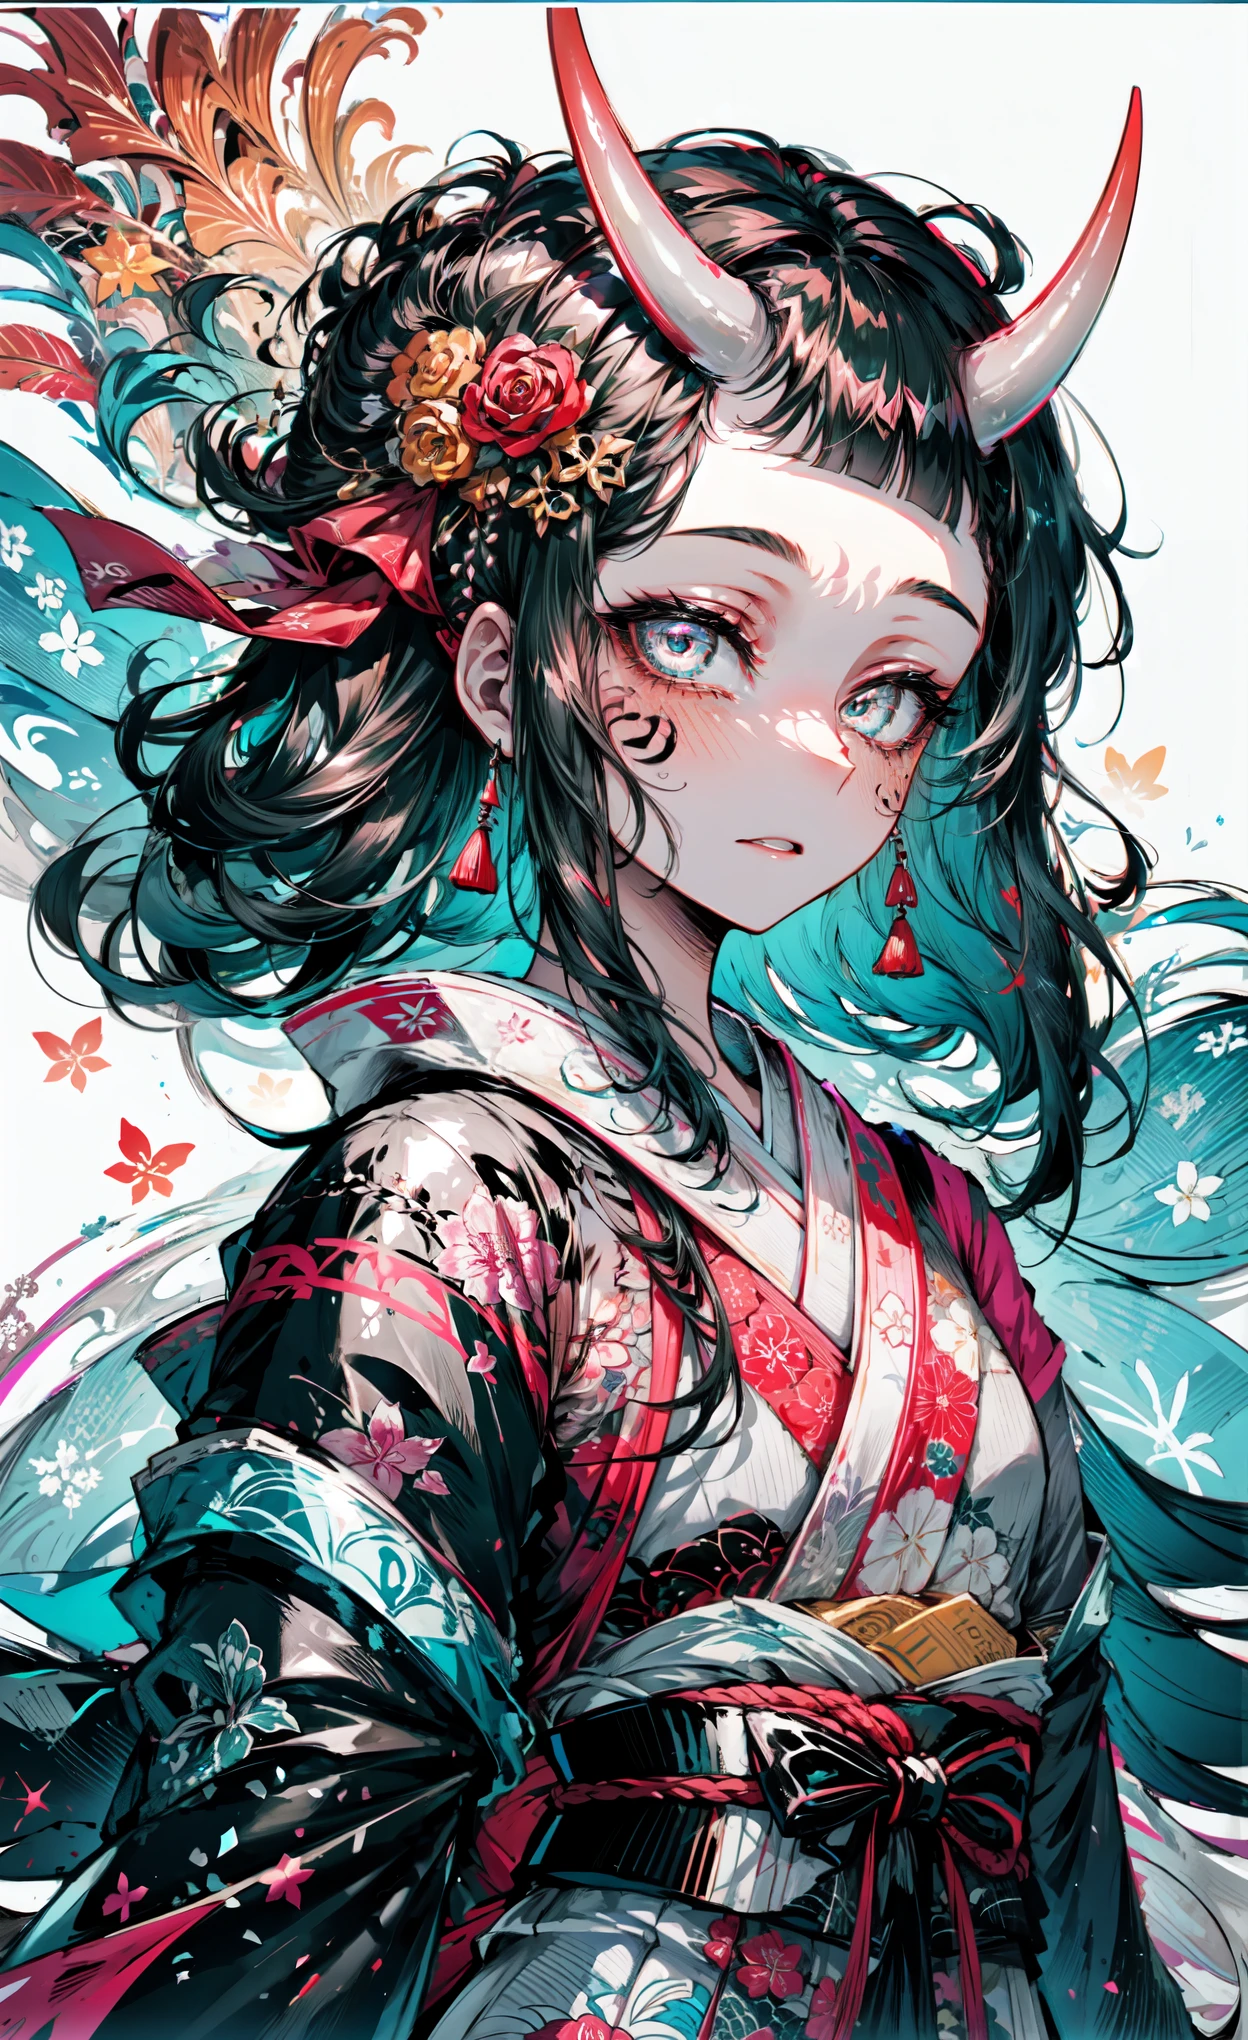 melhor qualidade,Obra de arte,Detalhes intrincados:1.2,rosto bonito,ukiyoe,1 garota,uma garota de quimono estampado,olhe para o visualizador:1.3,tatuagem no rosto:1.2,chifre de oni pequeno